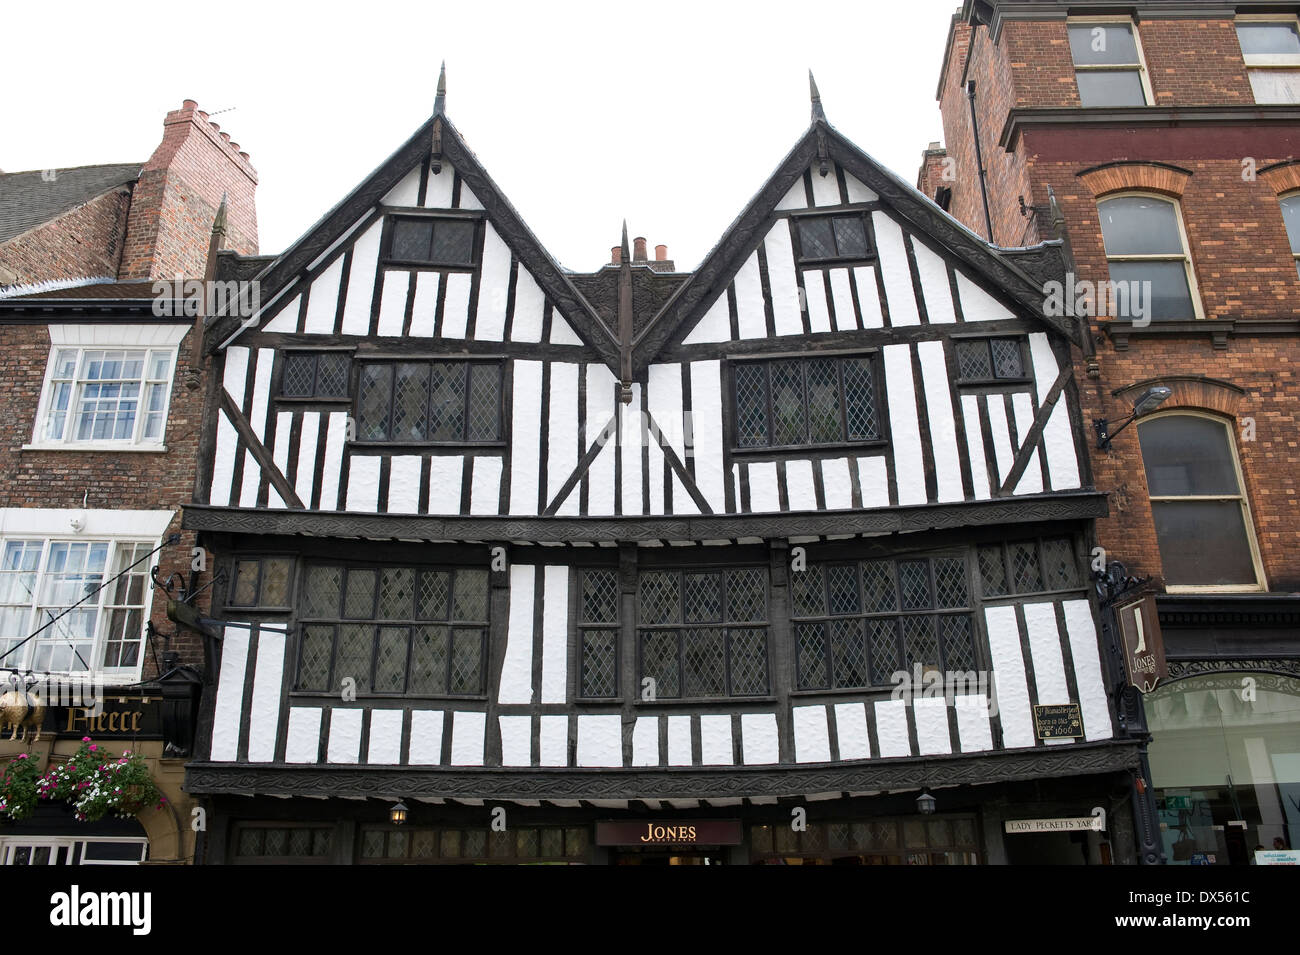 Grand bâtiment tudor noir et blanc dans la chaussée, York, Royaume-Uni. Aujourd'hui immobilier Jones le bottier. Banque D'Images